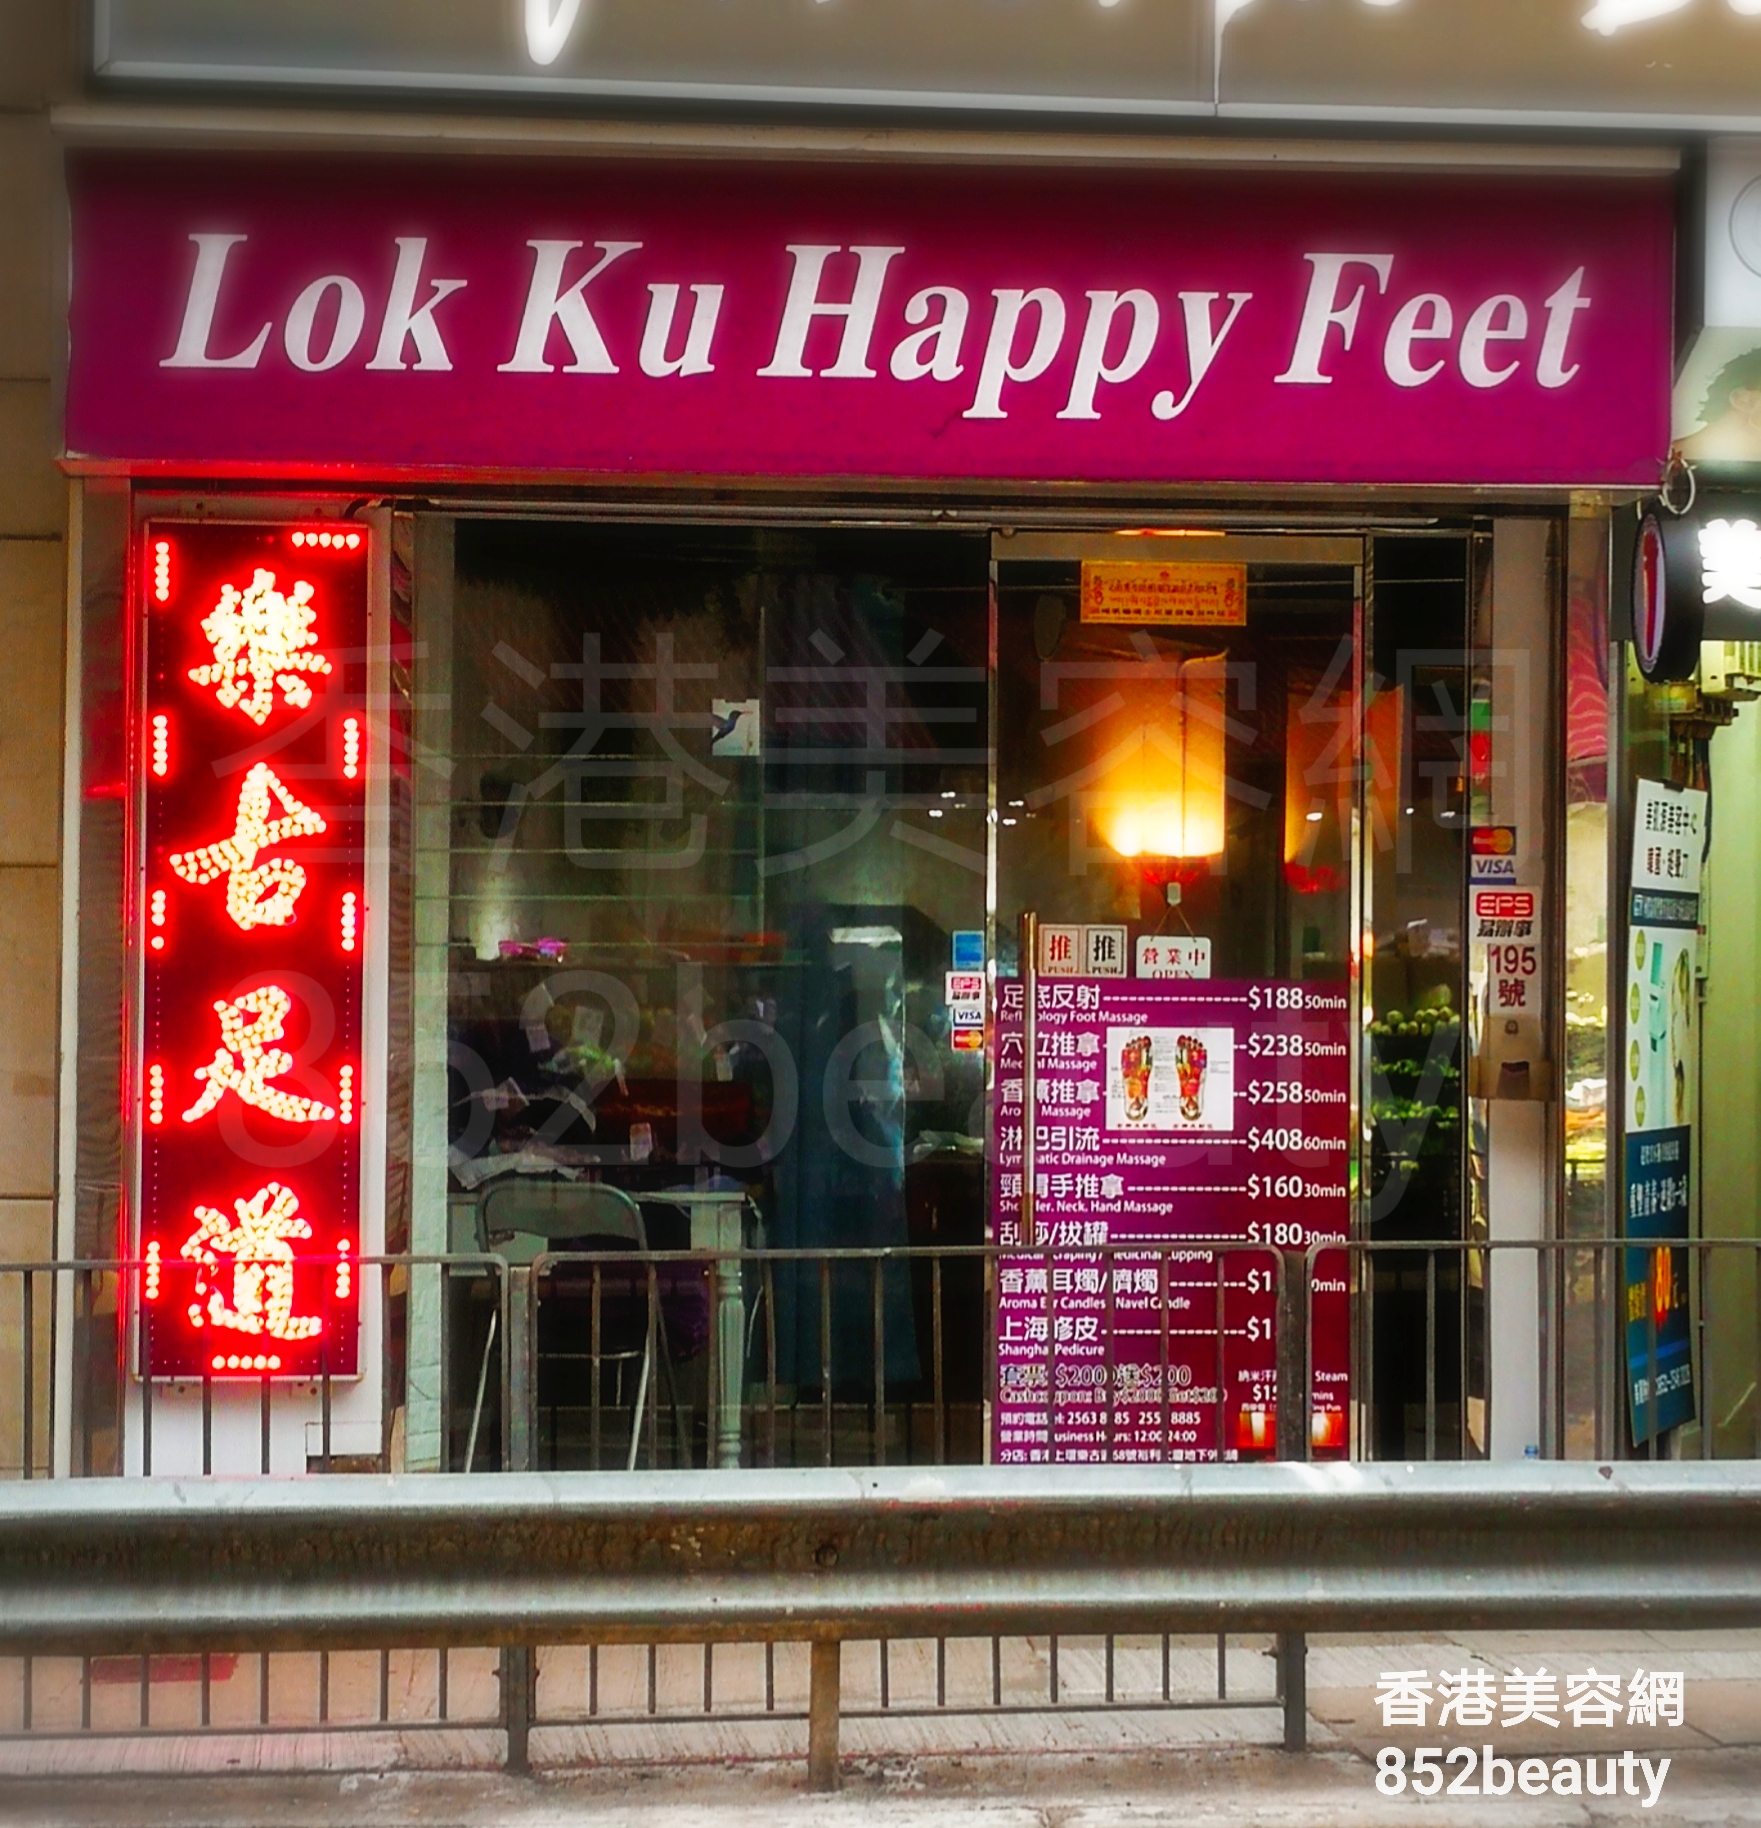 香港美容網 Hong Kong Beauty Salon 美容院 / 美容師: Lok Ku Happy Feet (西營盤分店)